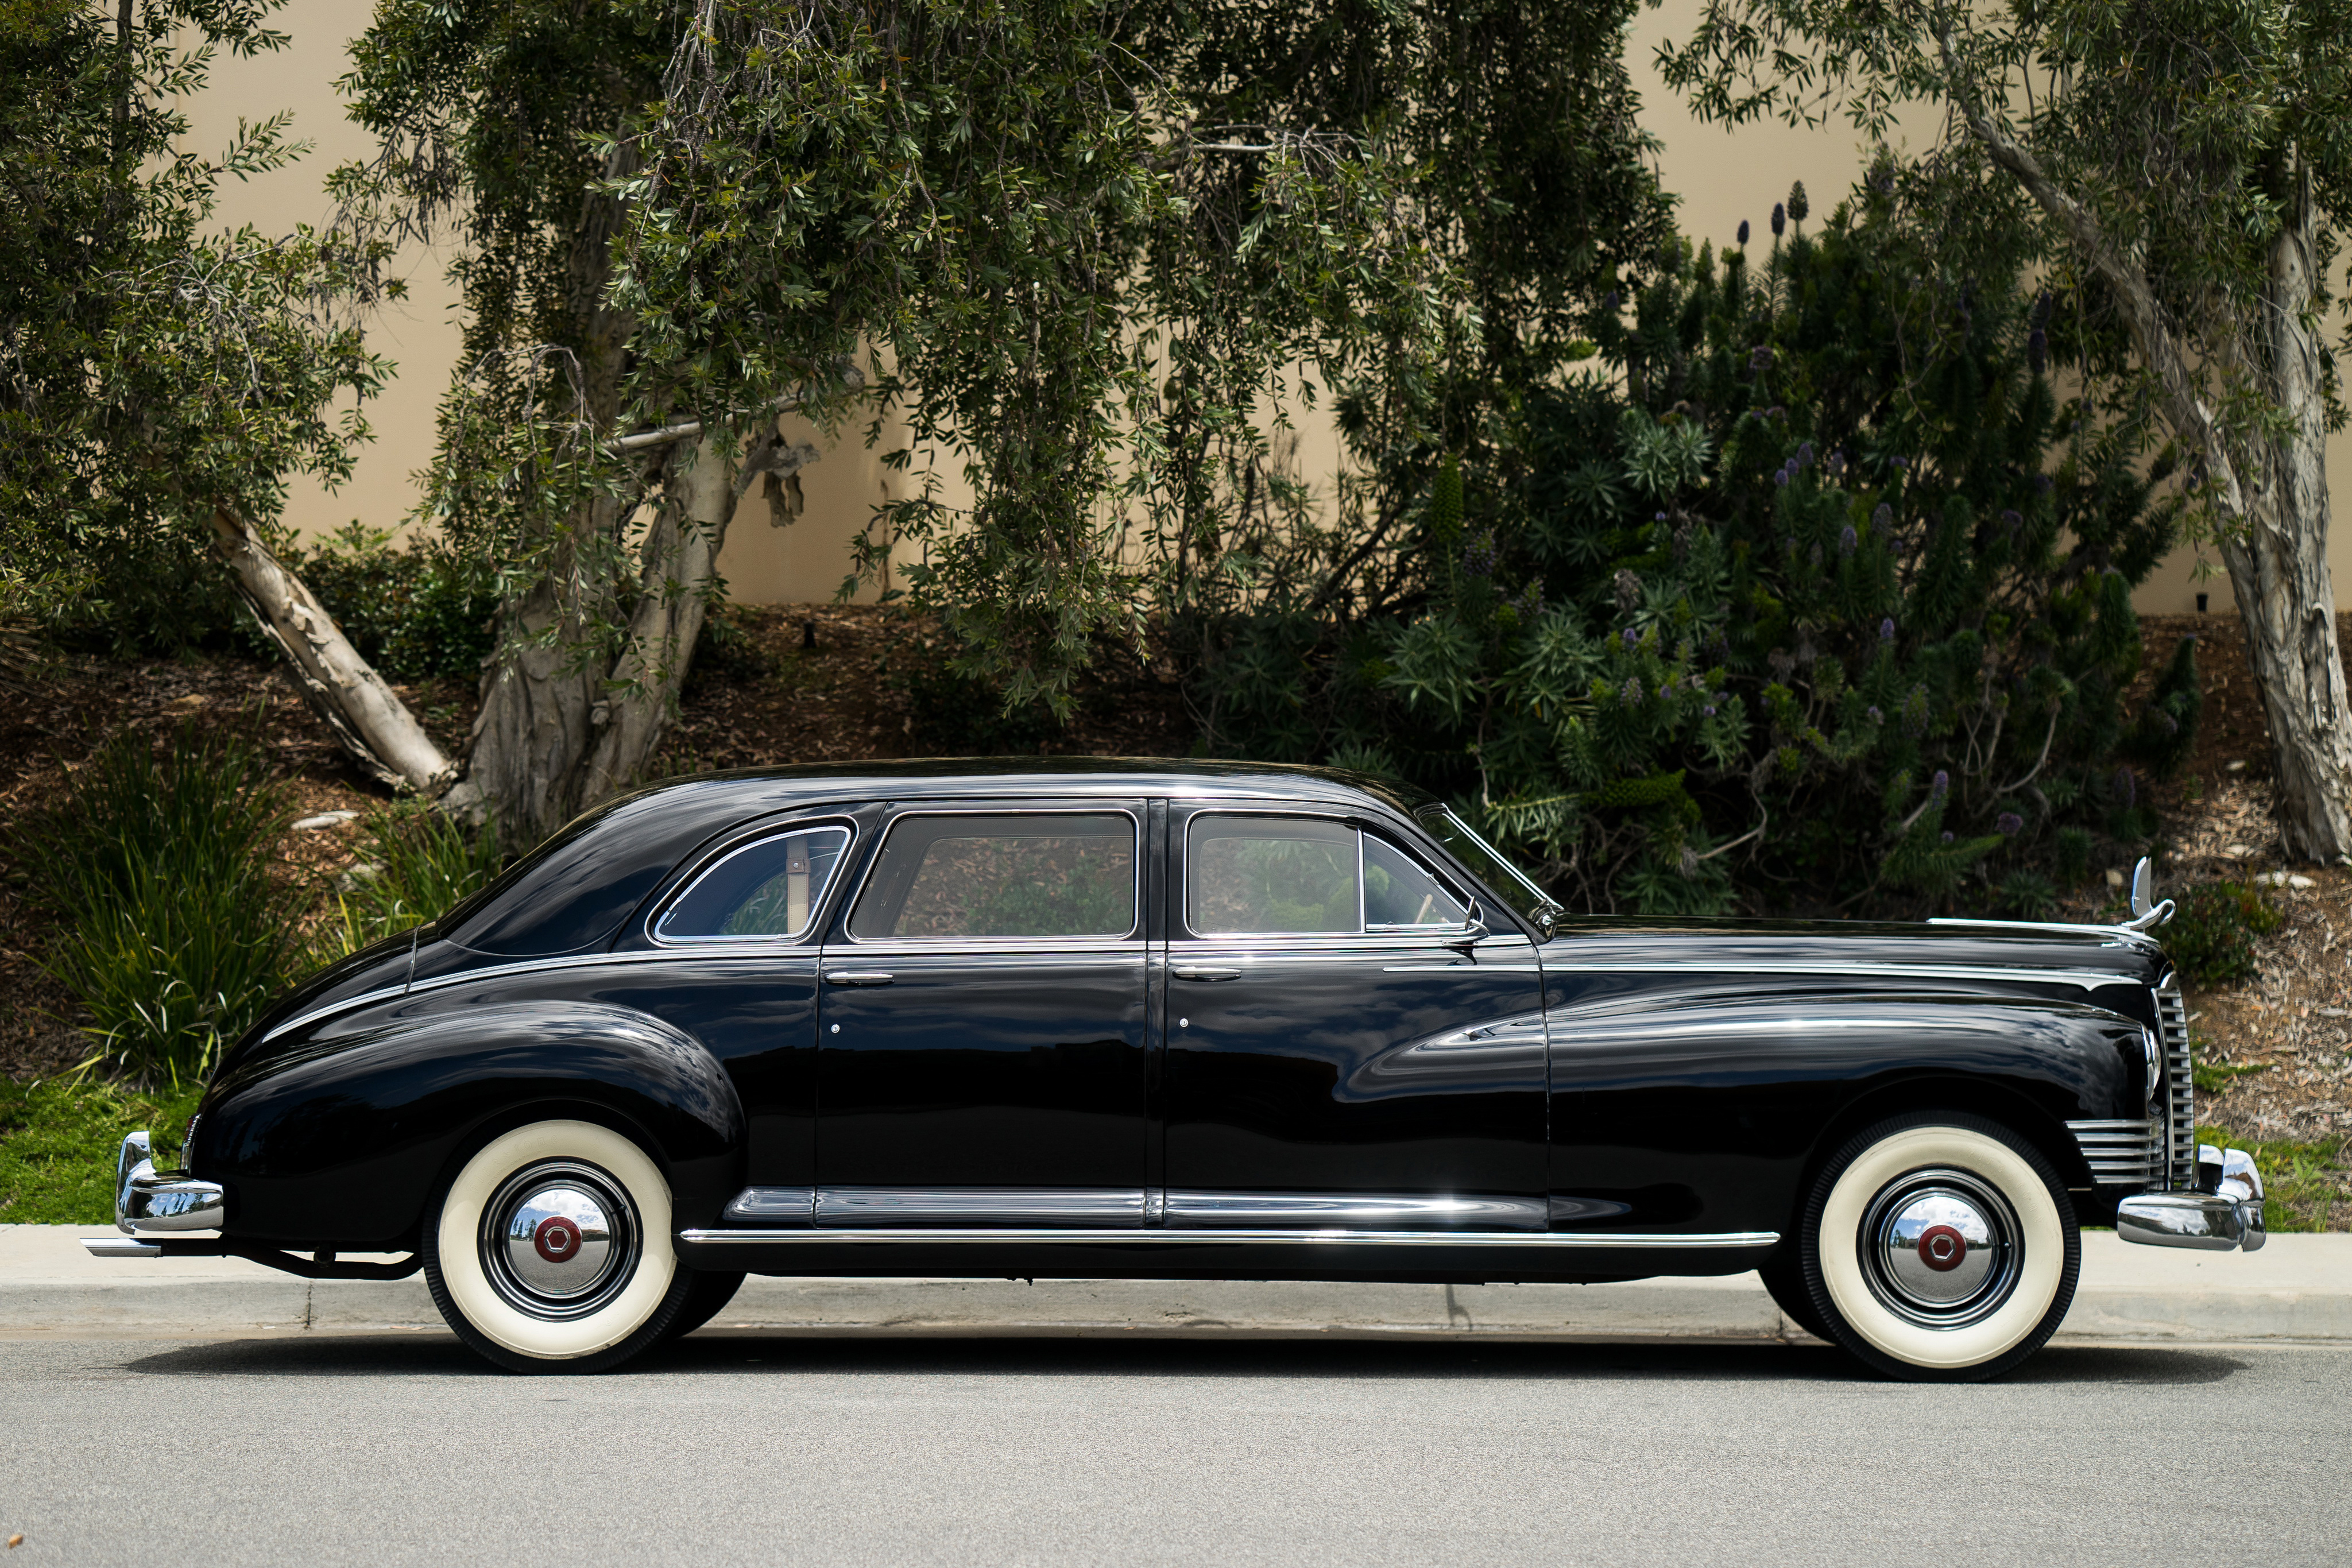 Фото 1946 Packard Custom Super Clipper Limousine Ретро Черный Сбоку машина Металлик 4096x2731 винтаж черная черные черных старинные авто машины Автомобили автомобиль